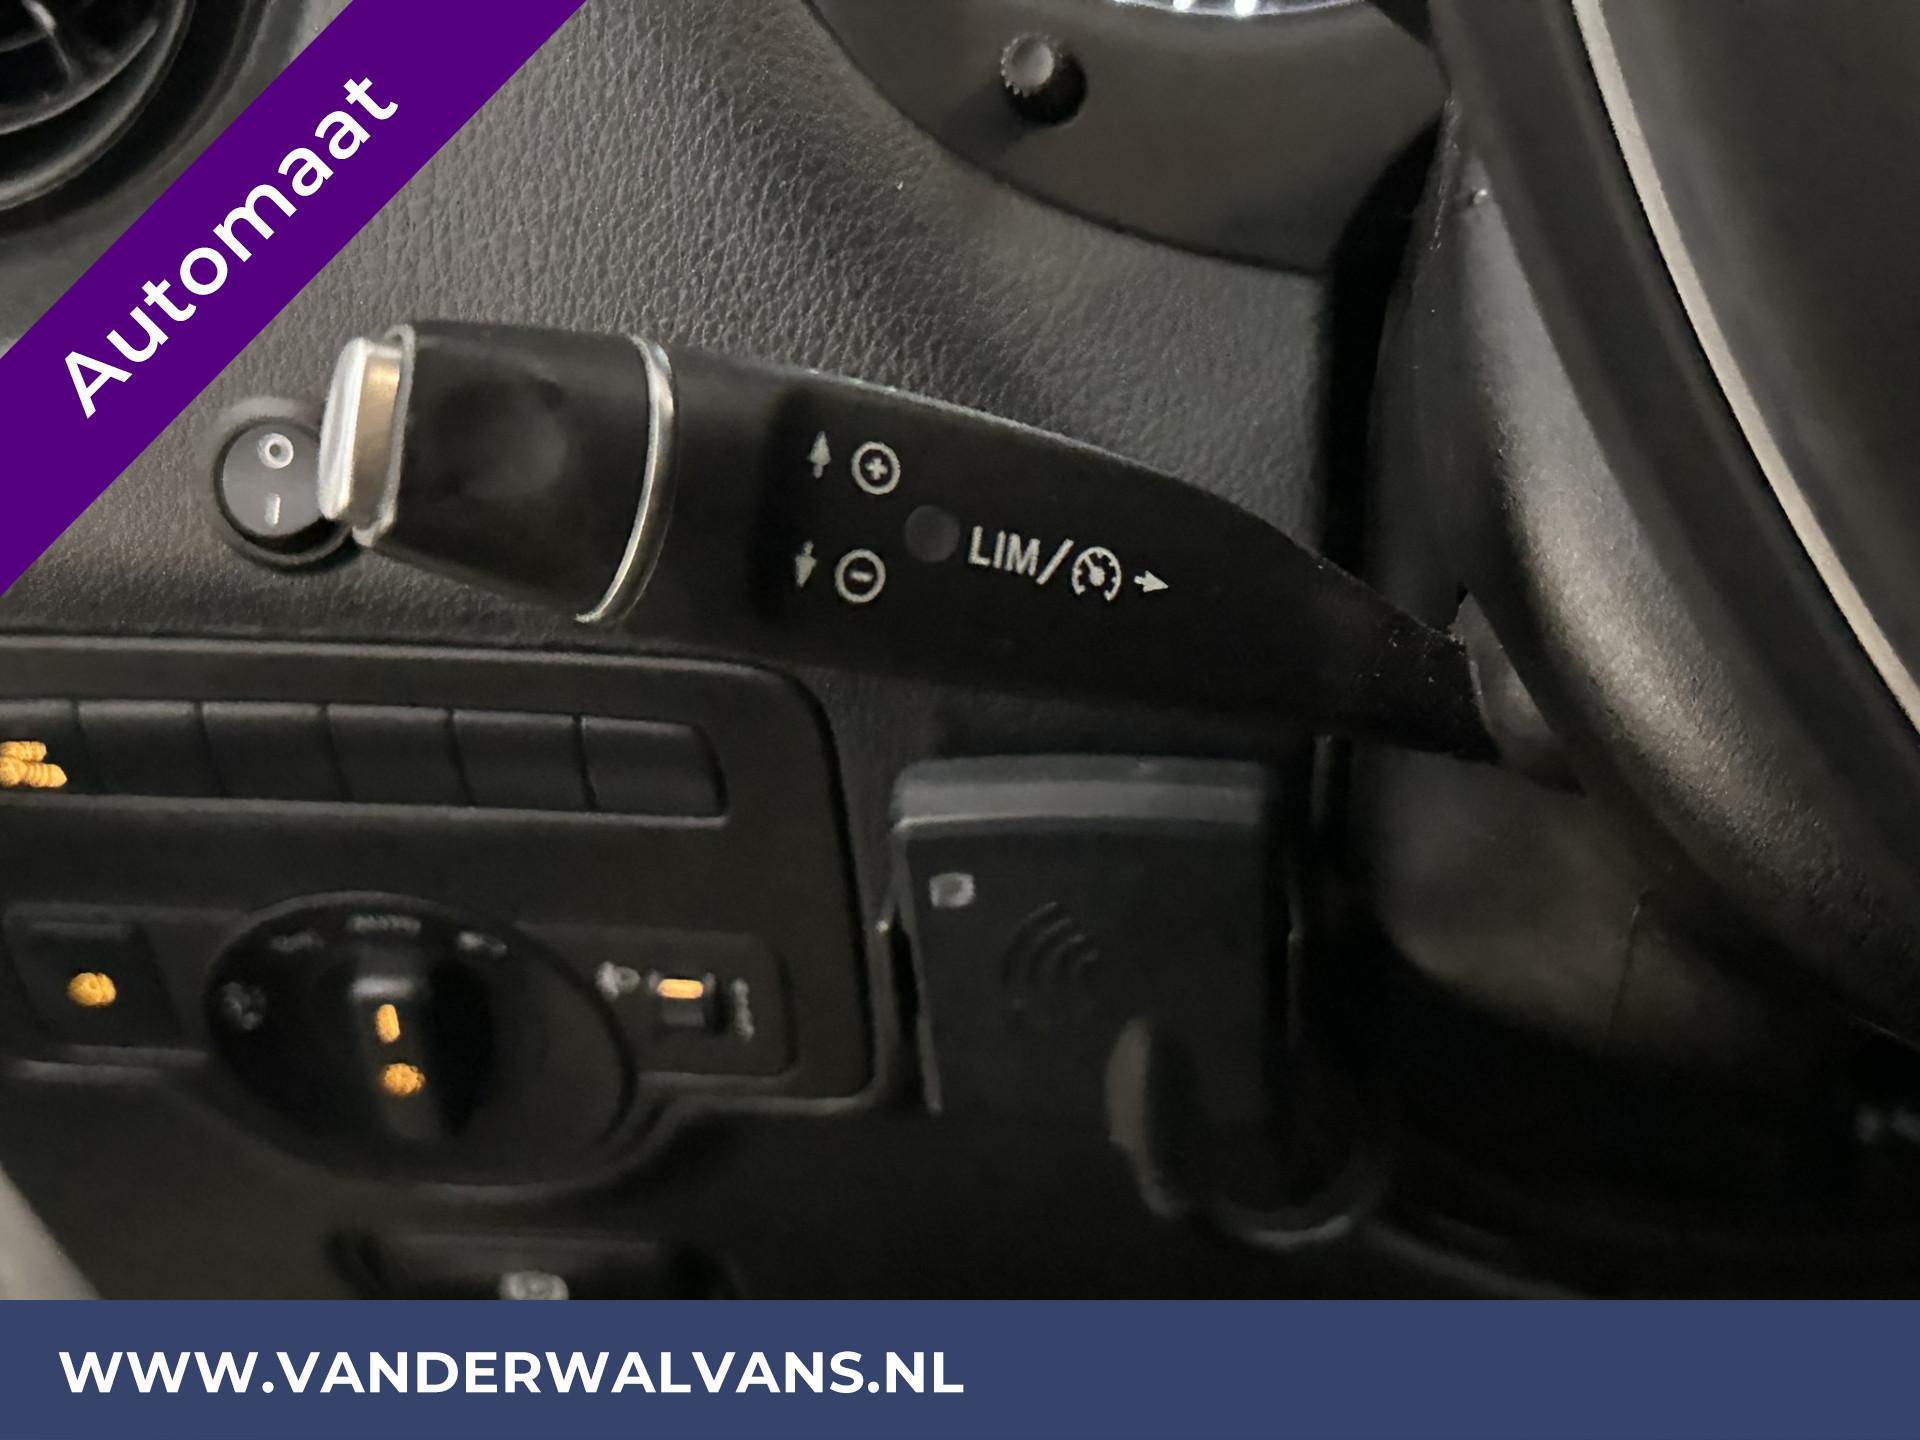 Foto 7 van Mercedes-Benz Vito 114 CDI 136pk 9G Tronic Automaat L2H1 Euro6 Airco | Camera | Navigatie | 2500kg Trekhaak